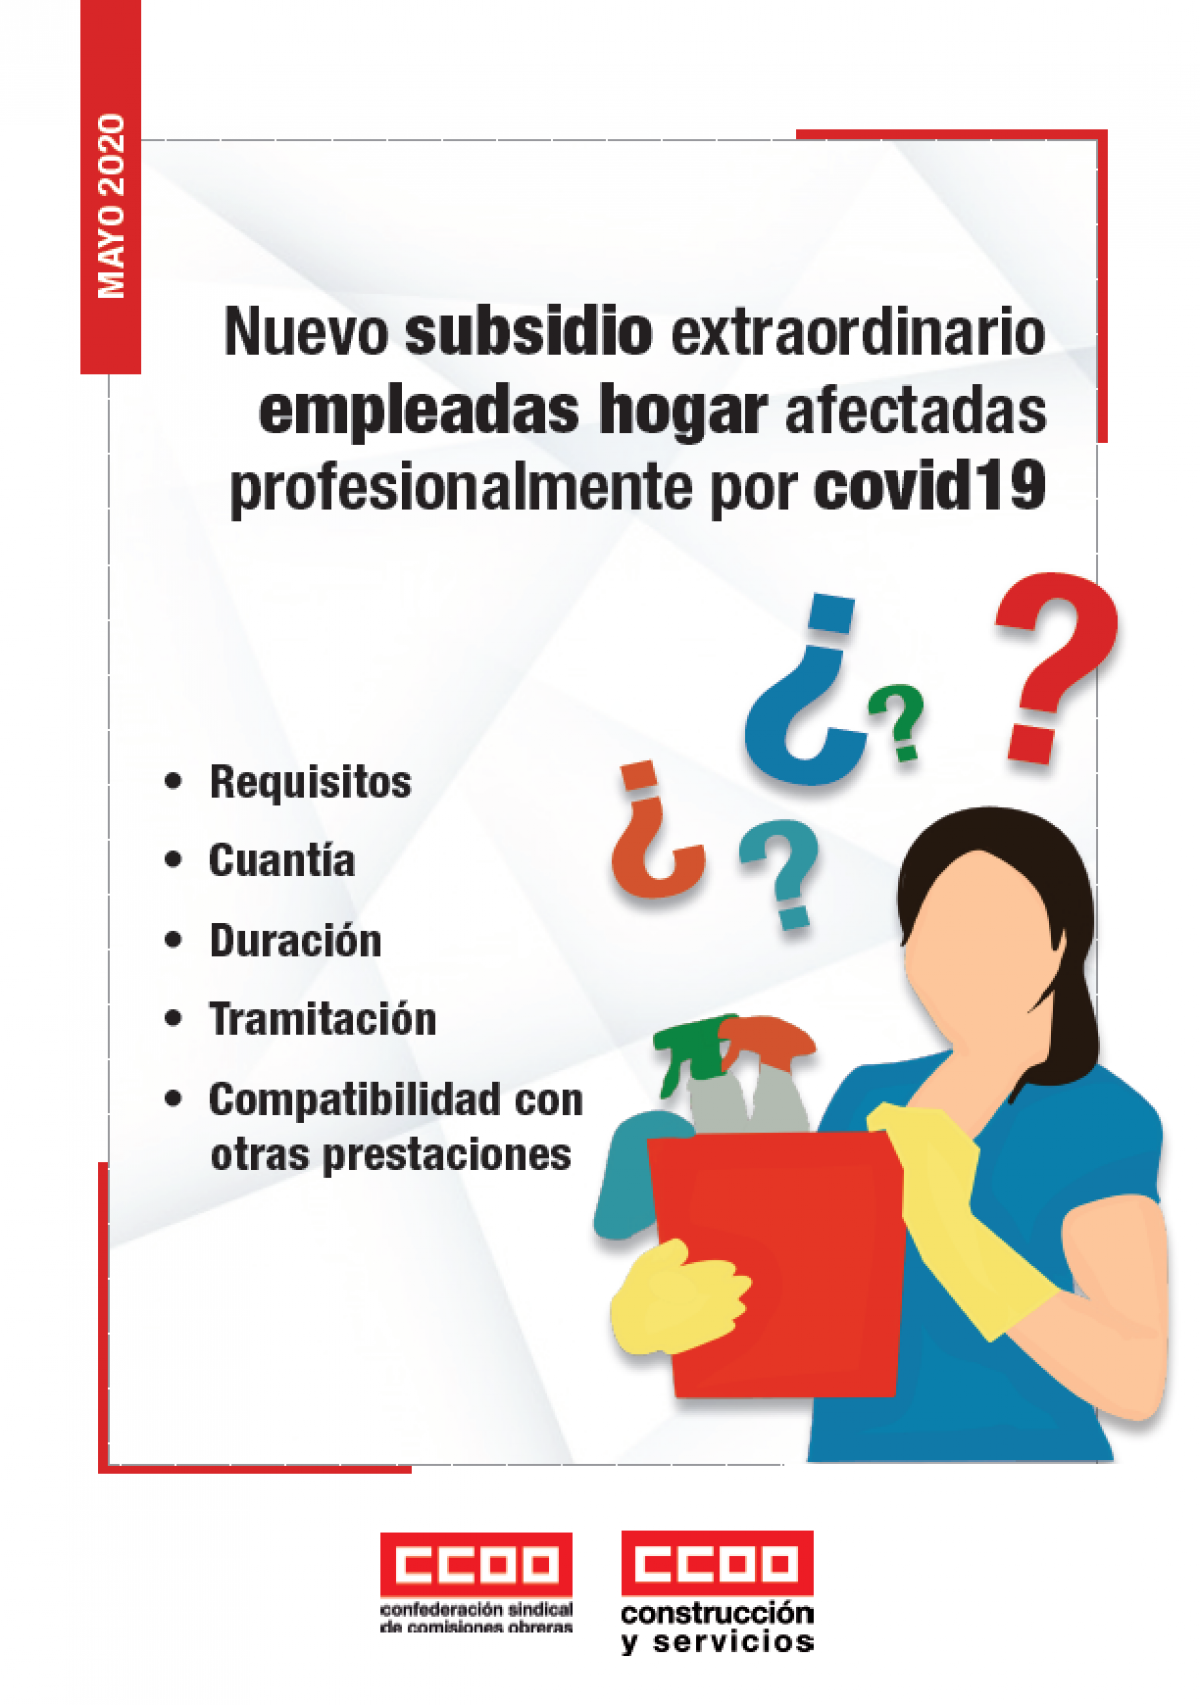 Nuevo subsidio extraordinario empleadas hogar afectadas profesionalmente por covid19 4-5-2020